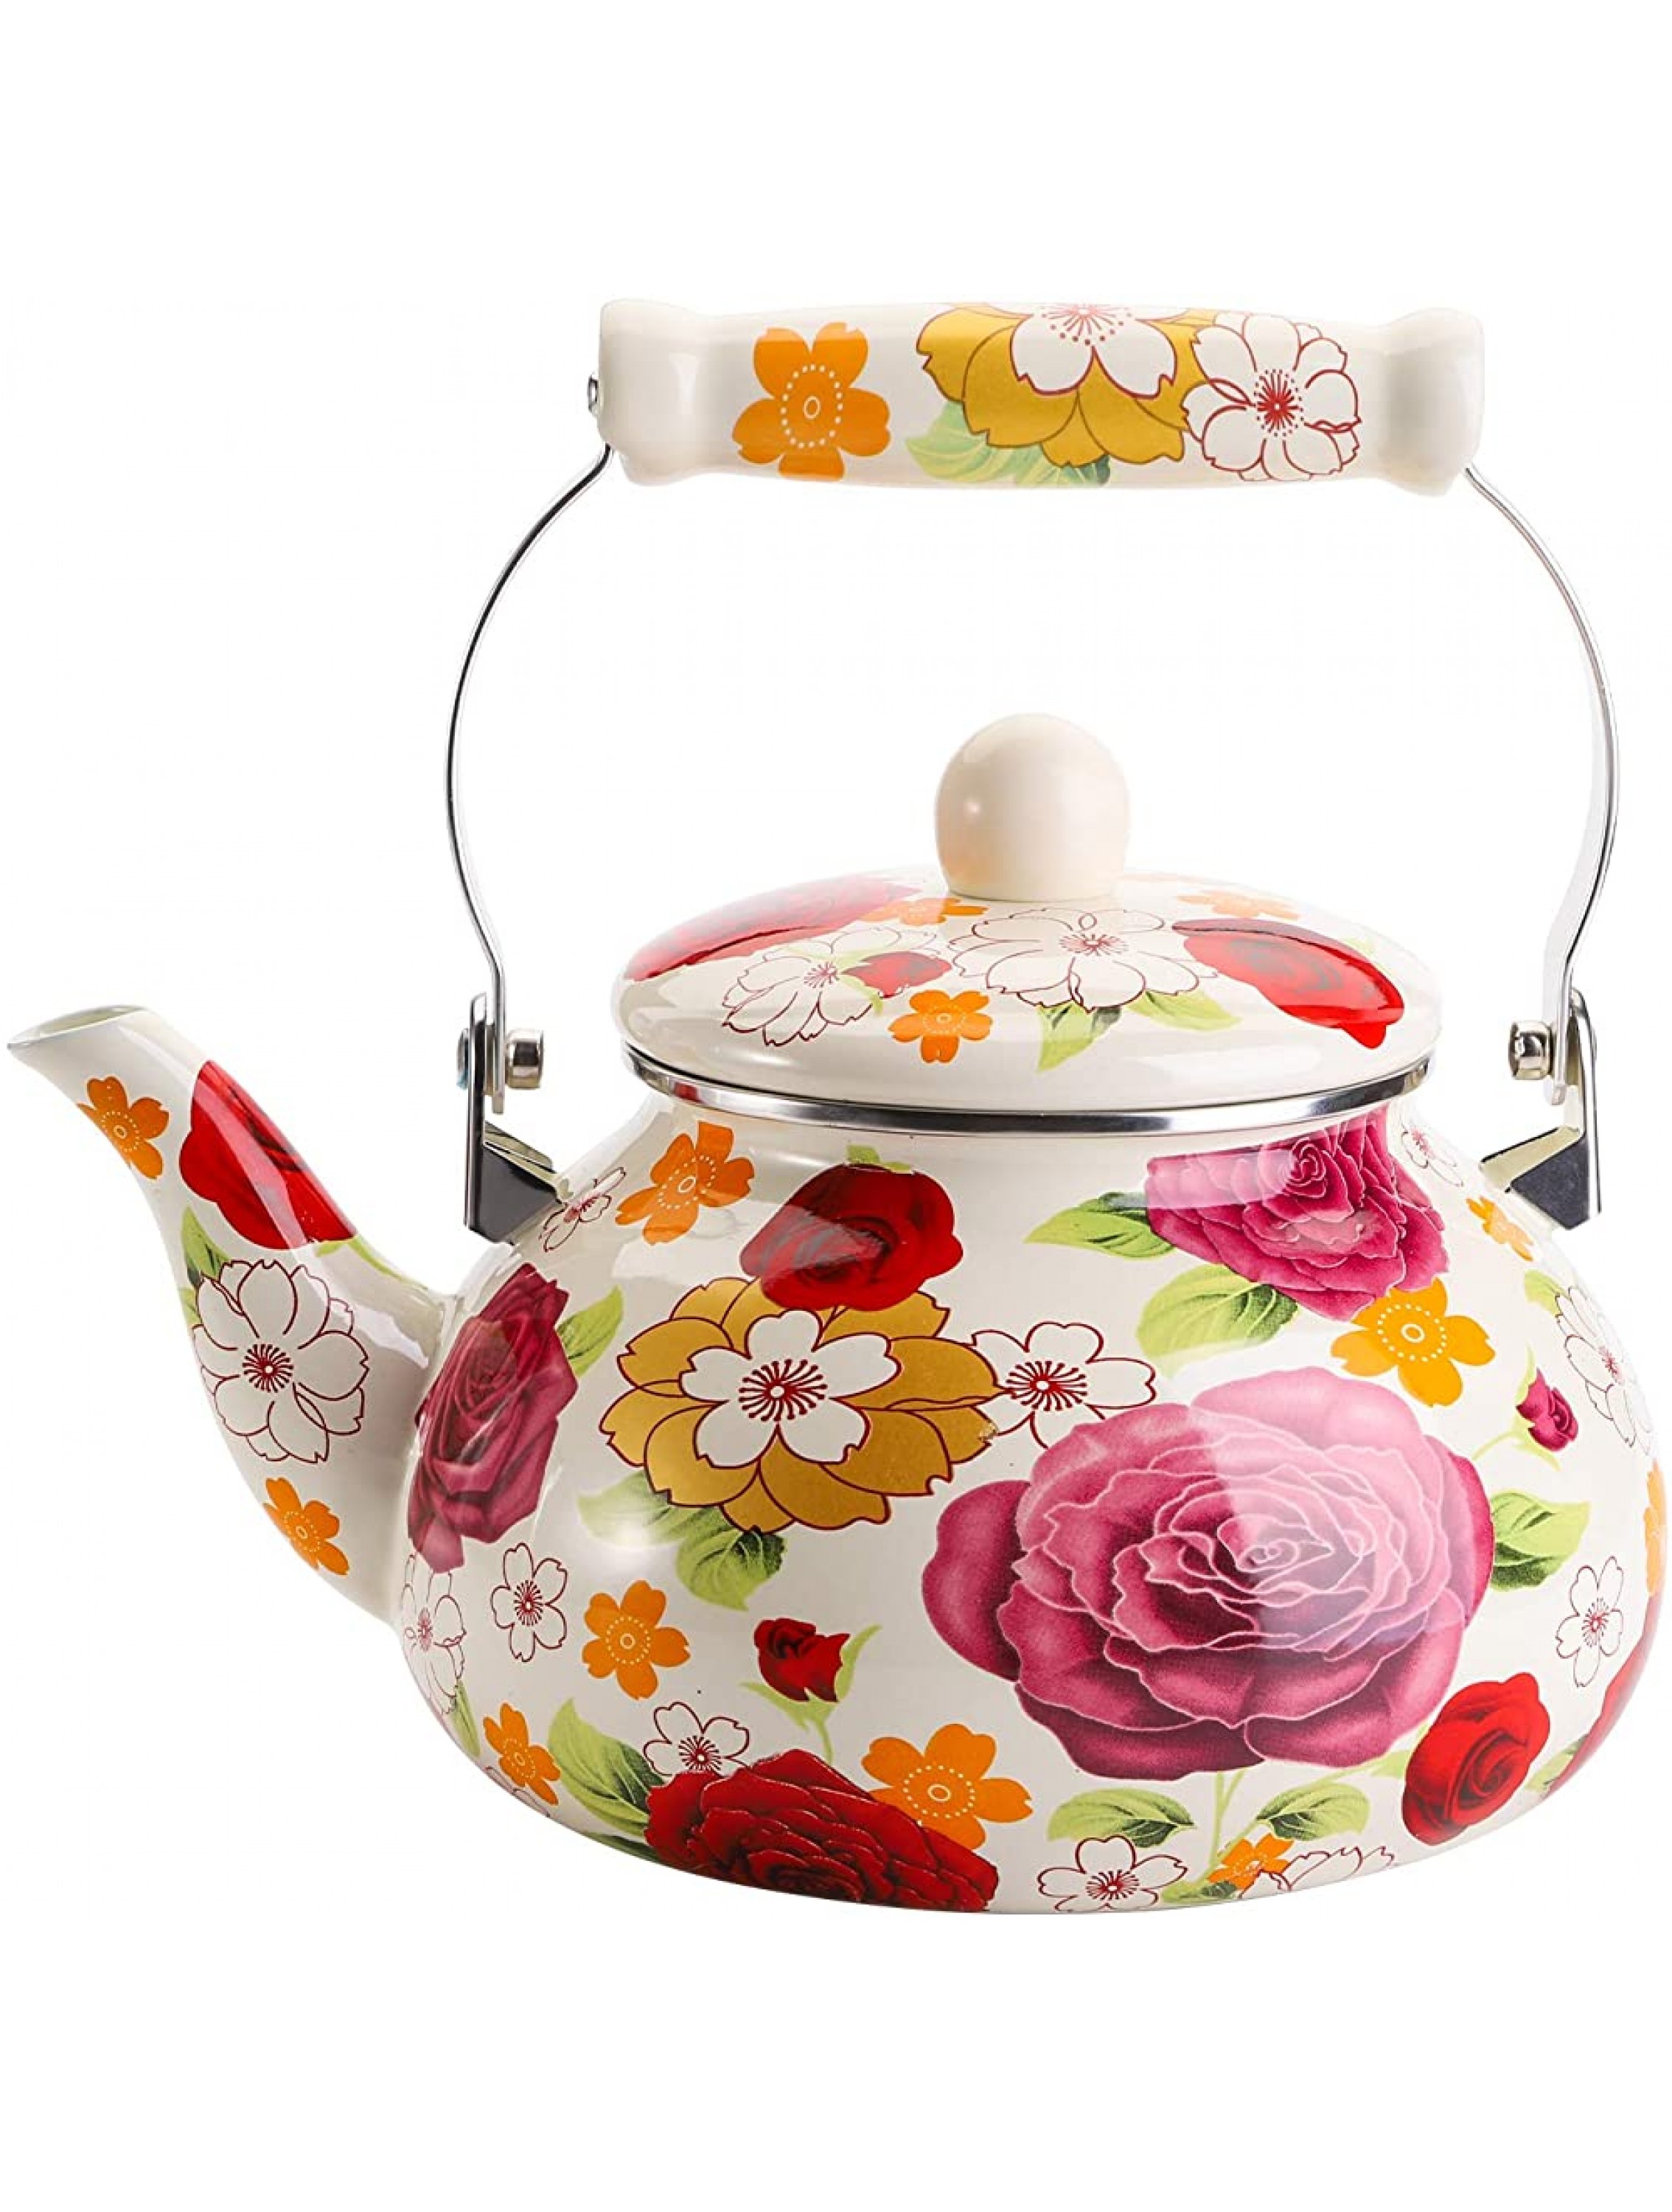 Jucoan Vintage Enamel Tea Kettle 2.6 Quart Large Rose Floral Enamel on Steel Teapot with Porcelain Handle for Stovetop - BKR9YXN0R